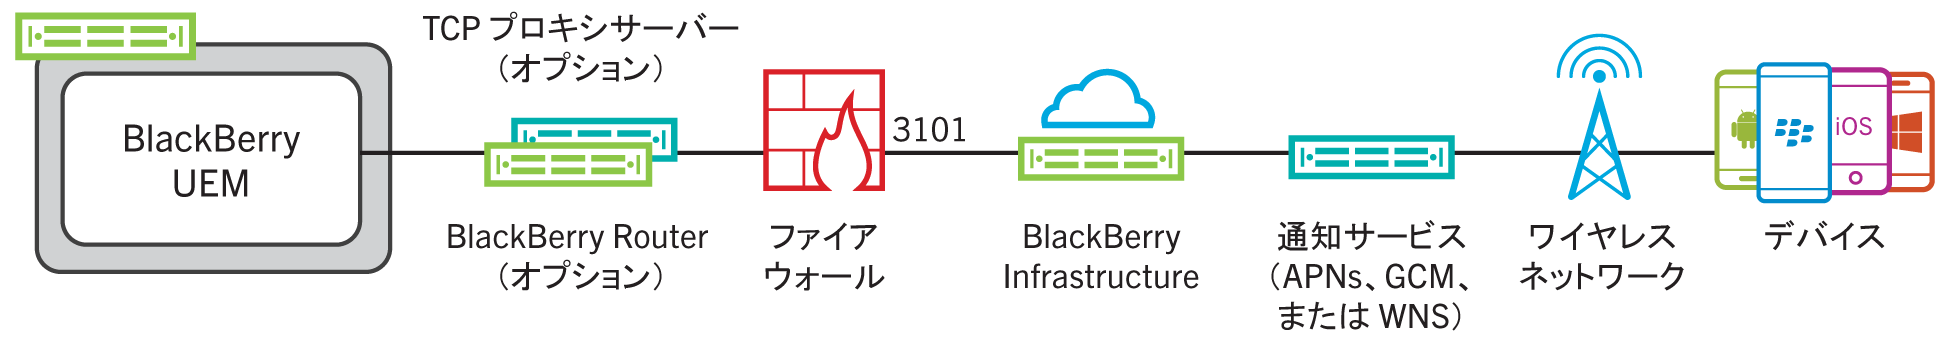 この図は、BlackBerry UEM がポート 3101 経由で BlackBerry Infrastructure に接続する方法を示しています。